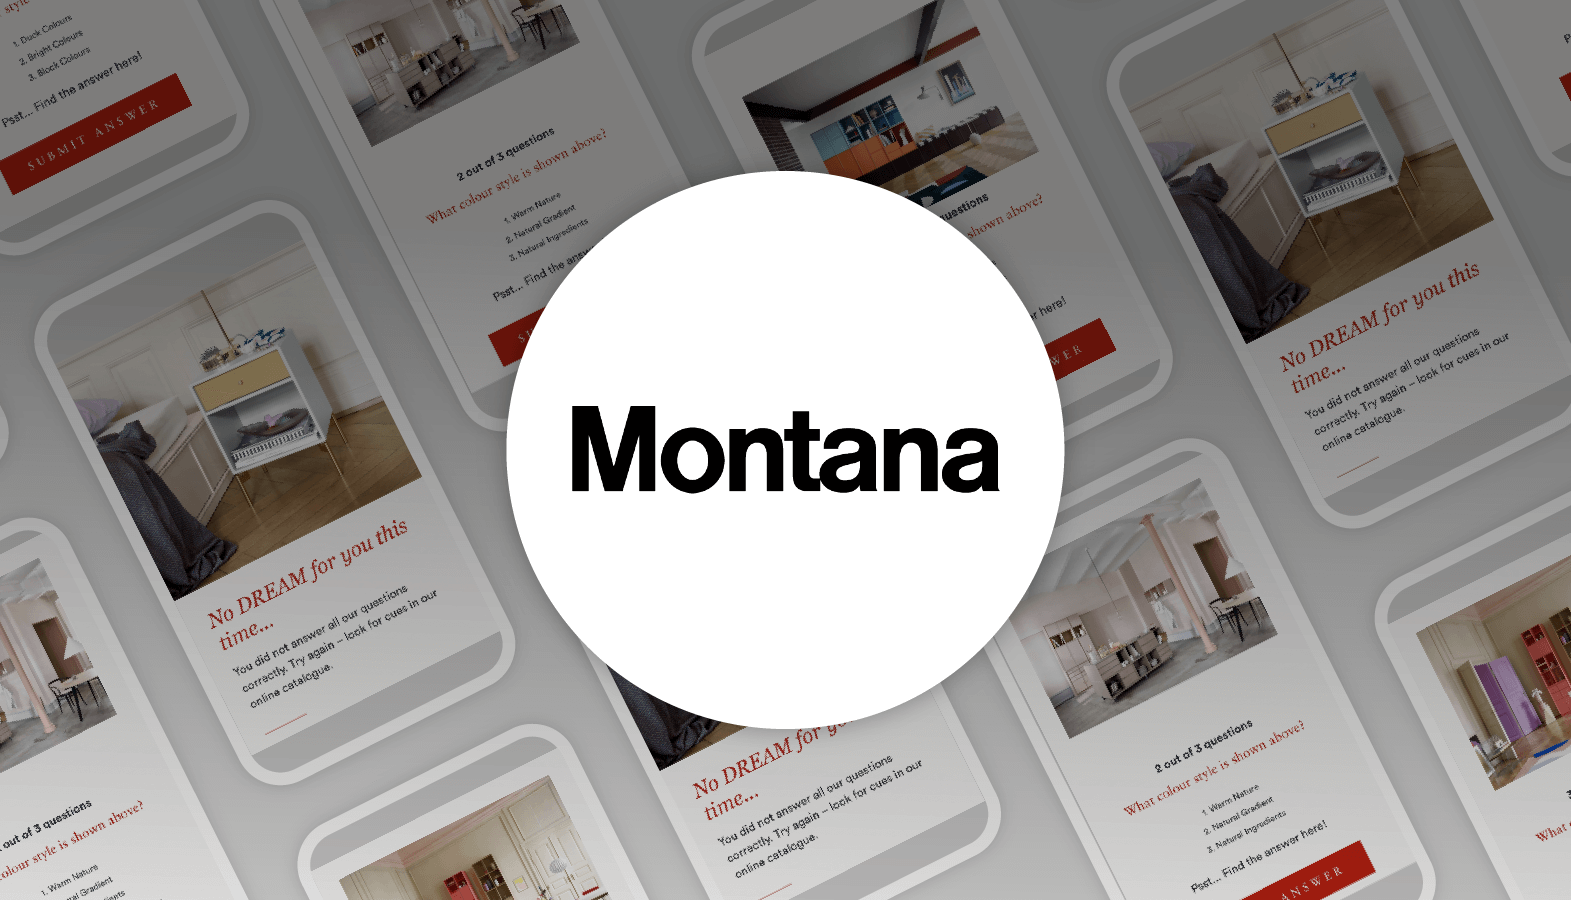 Montana Customer Story with Playable